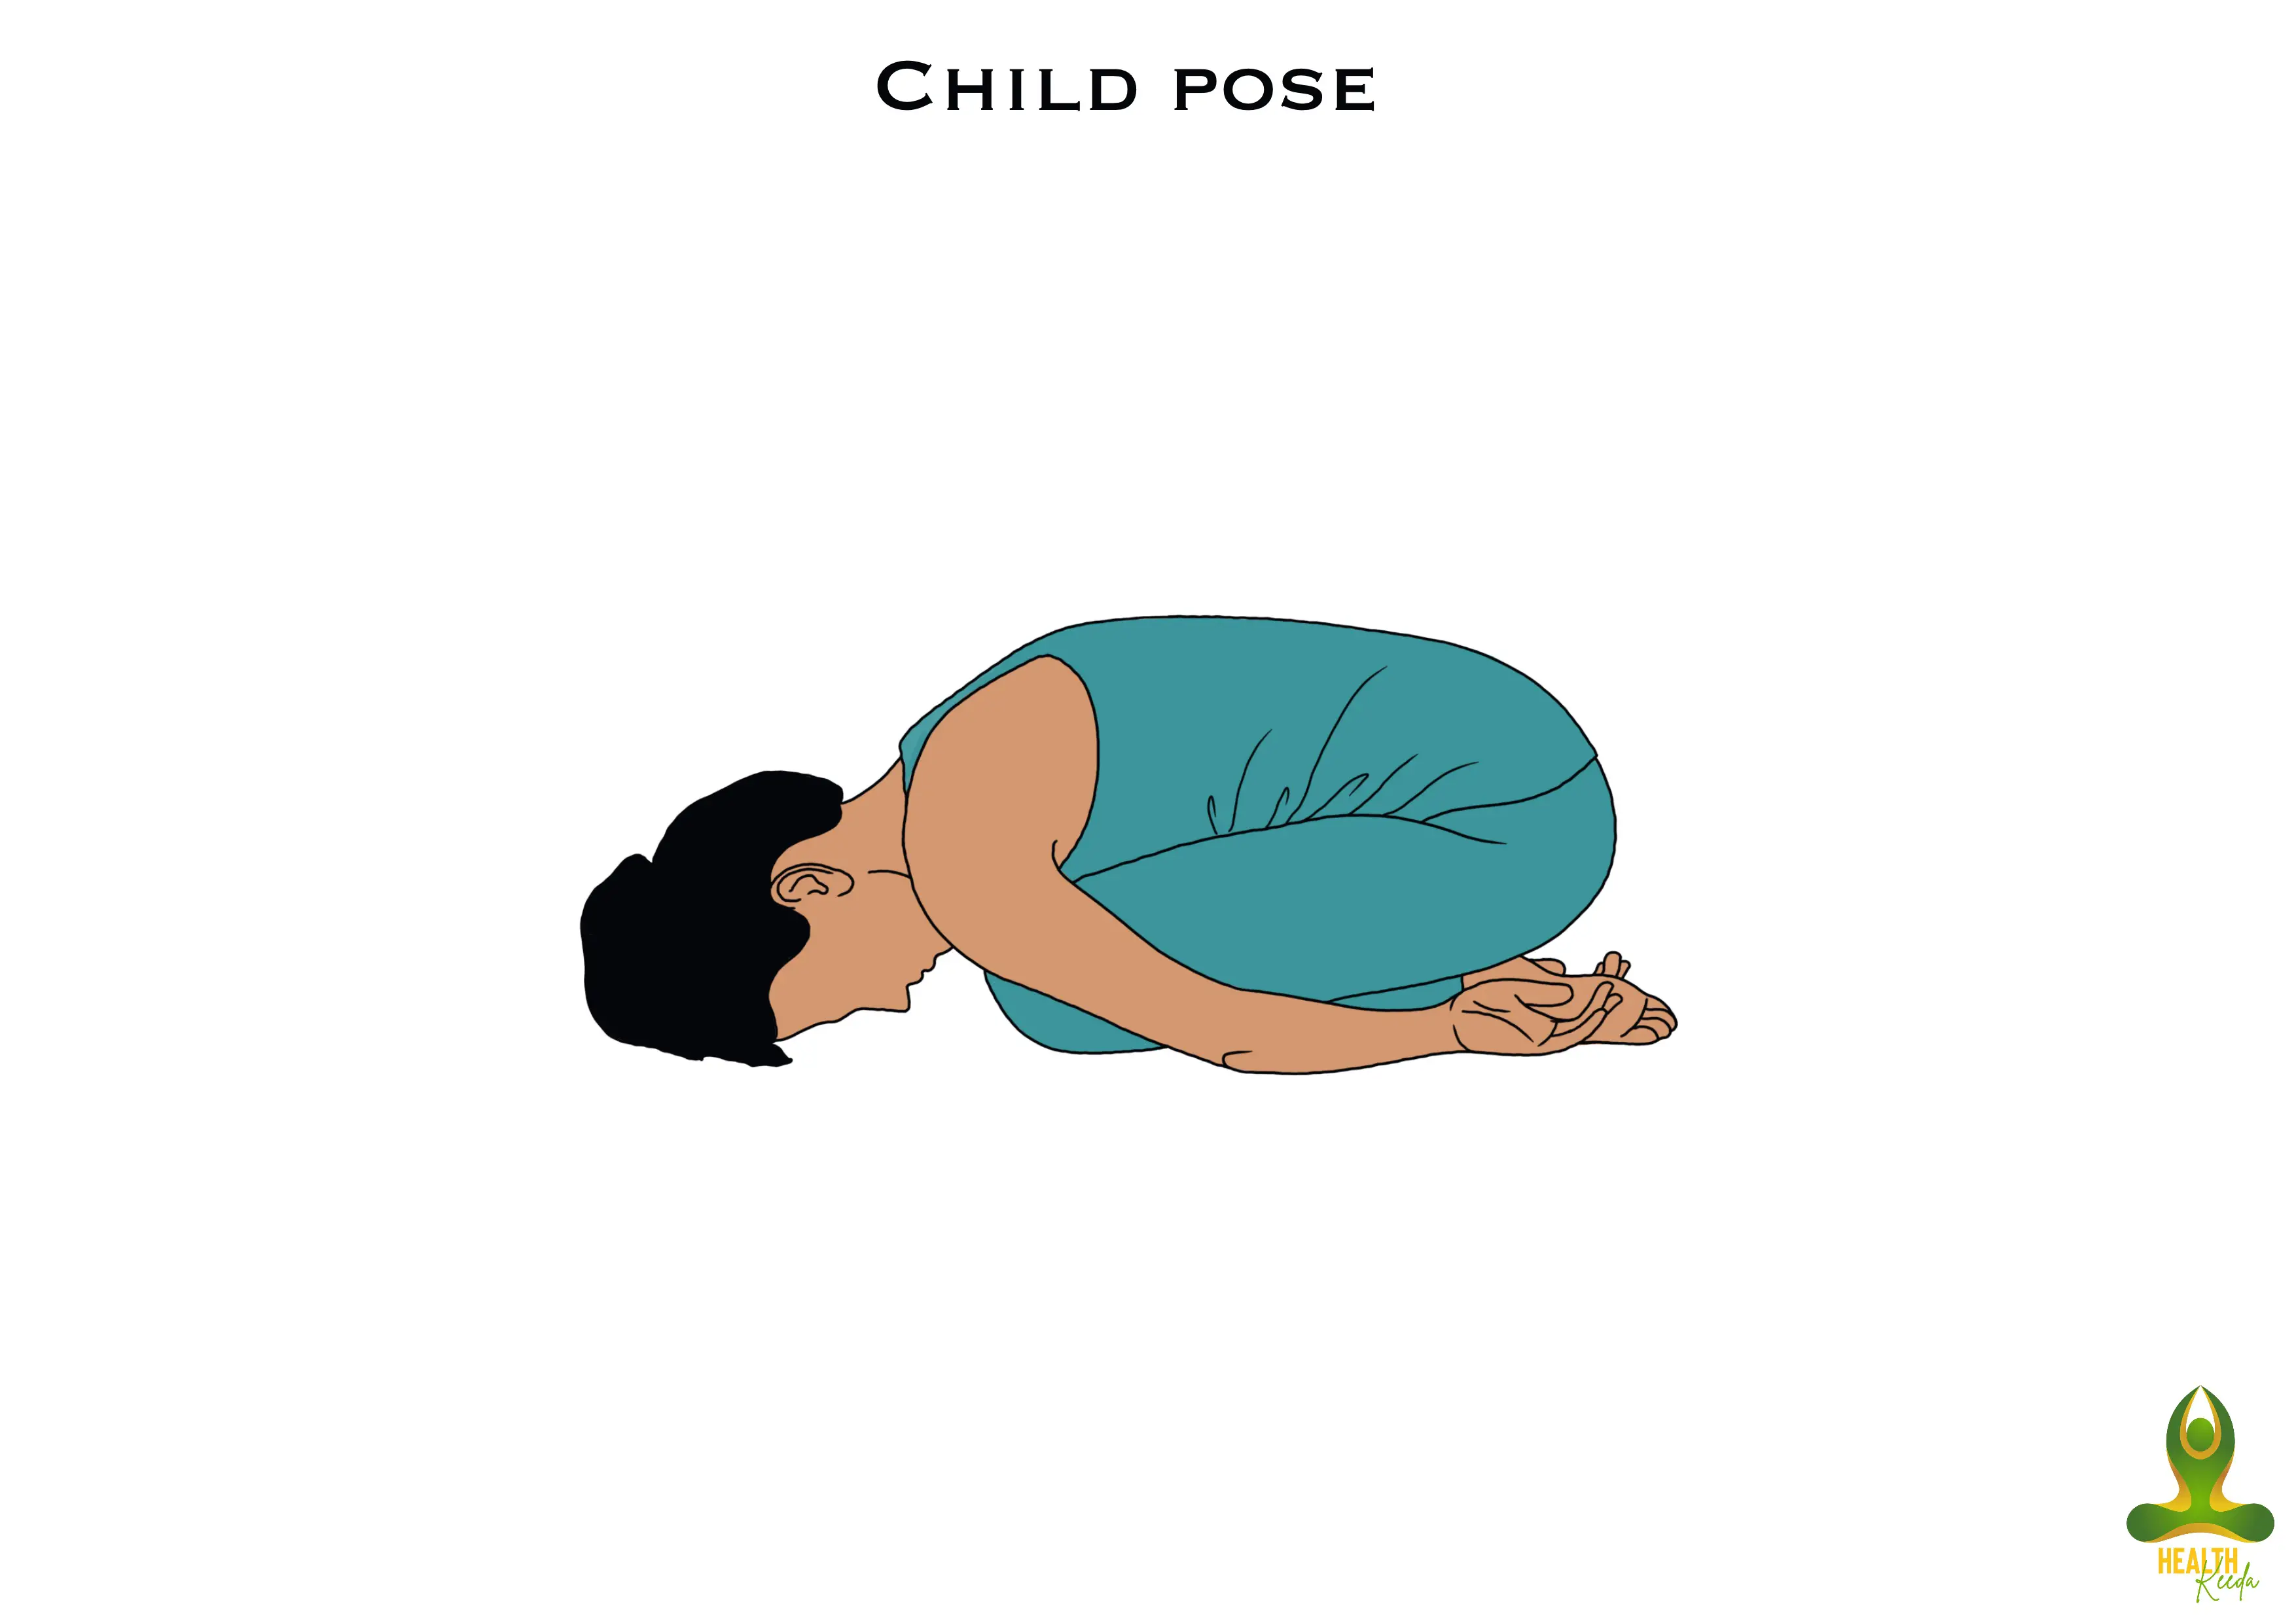 Balasan or Child pose - Yoga Poses for Bulging Disc